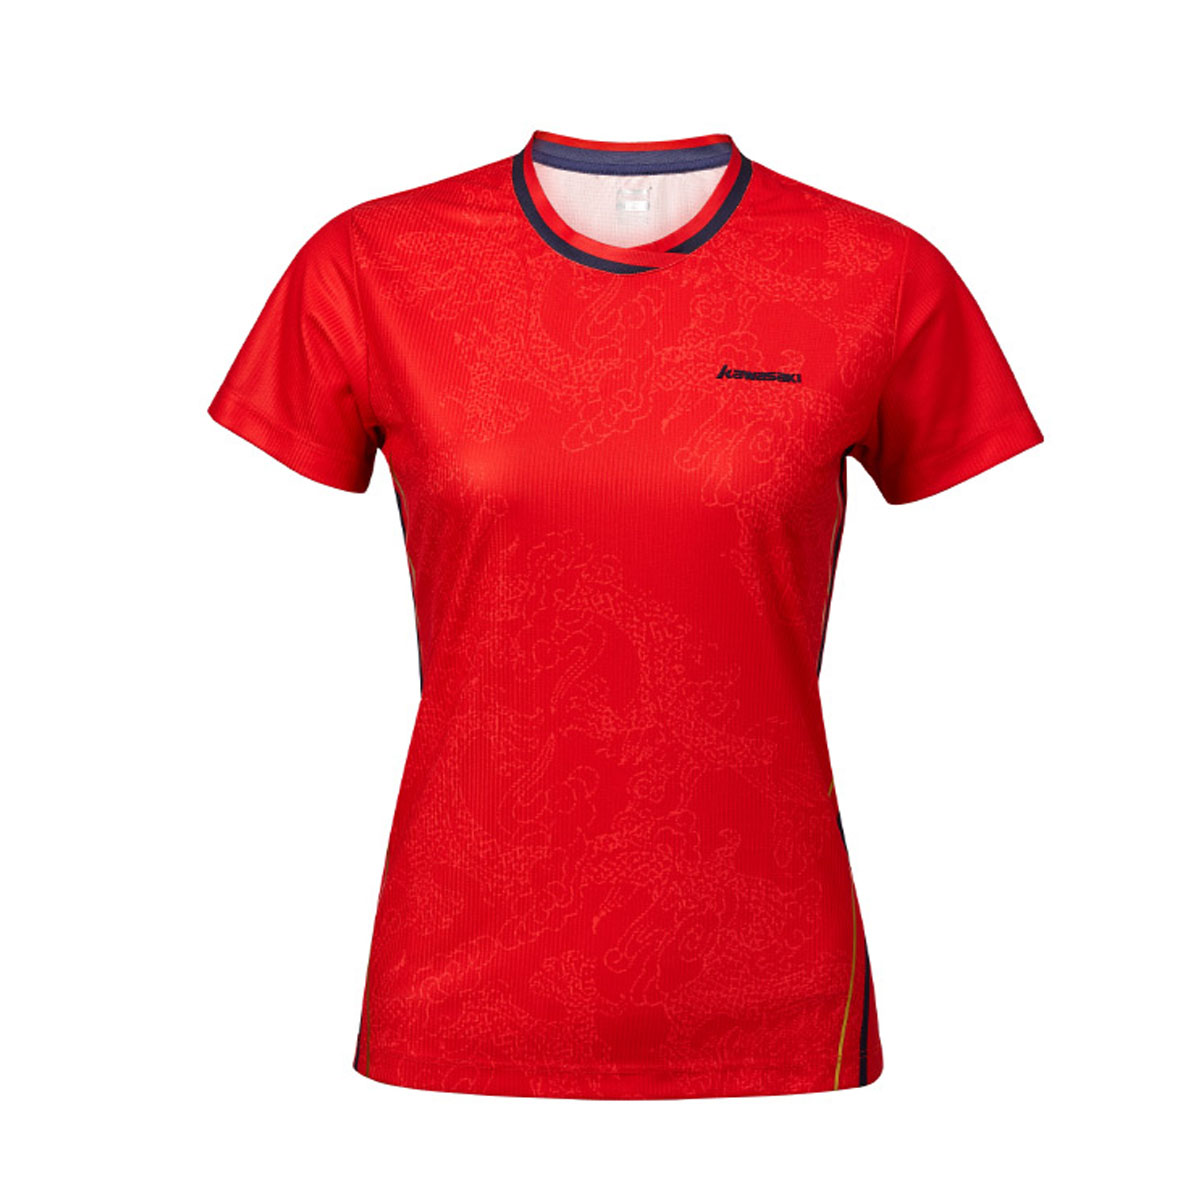 Женская футболка KAWASAKI A2949-2 RED (размеры: S, M, L, XL, 2XL). 